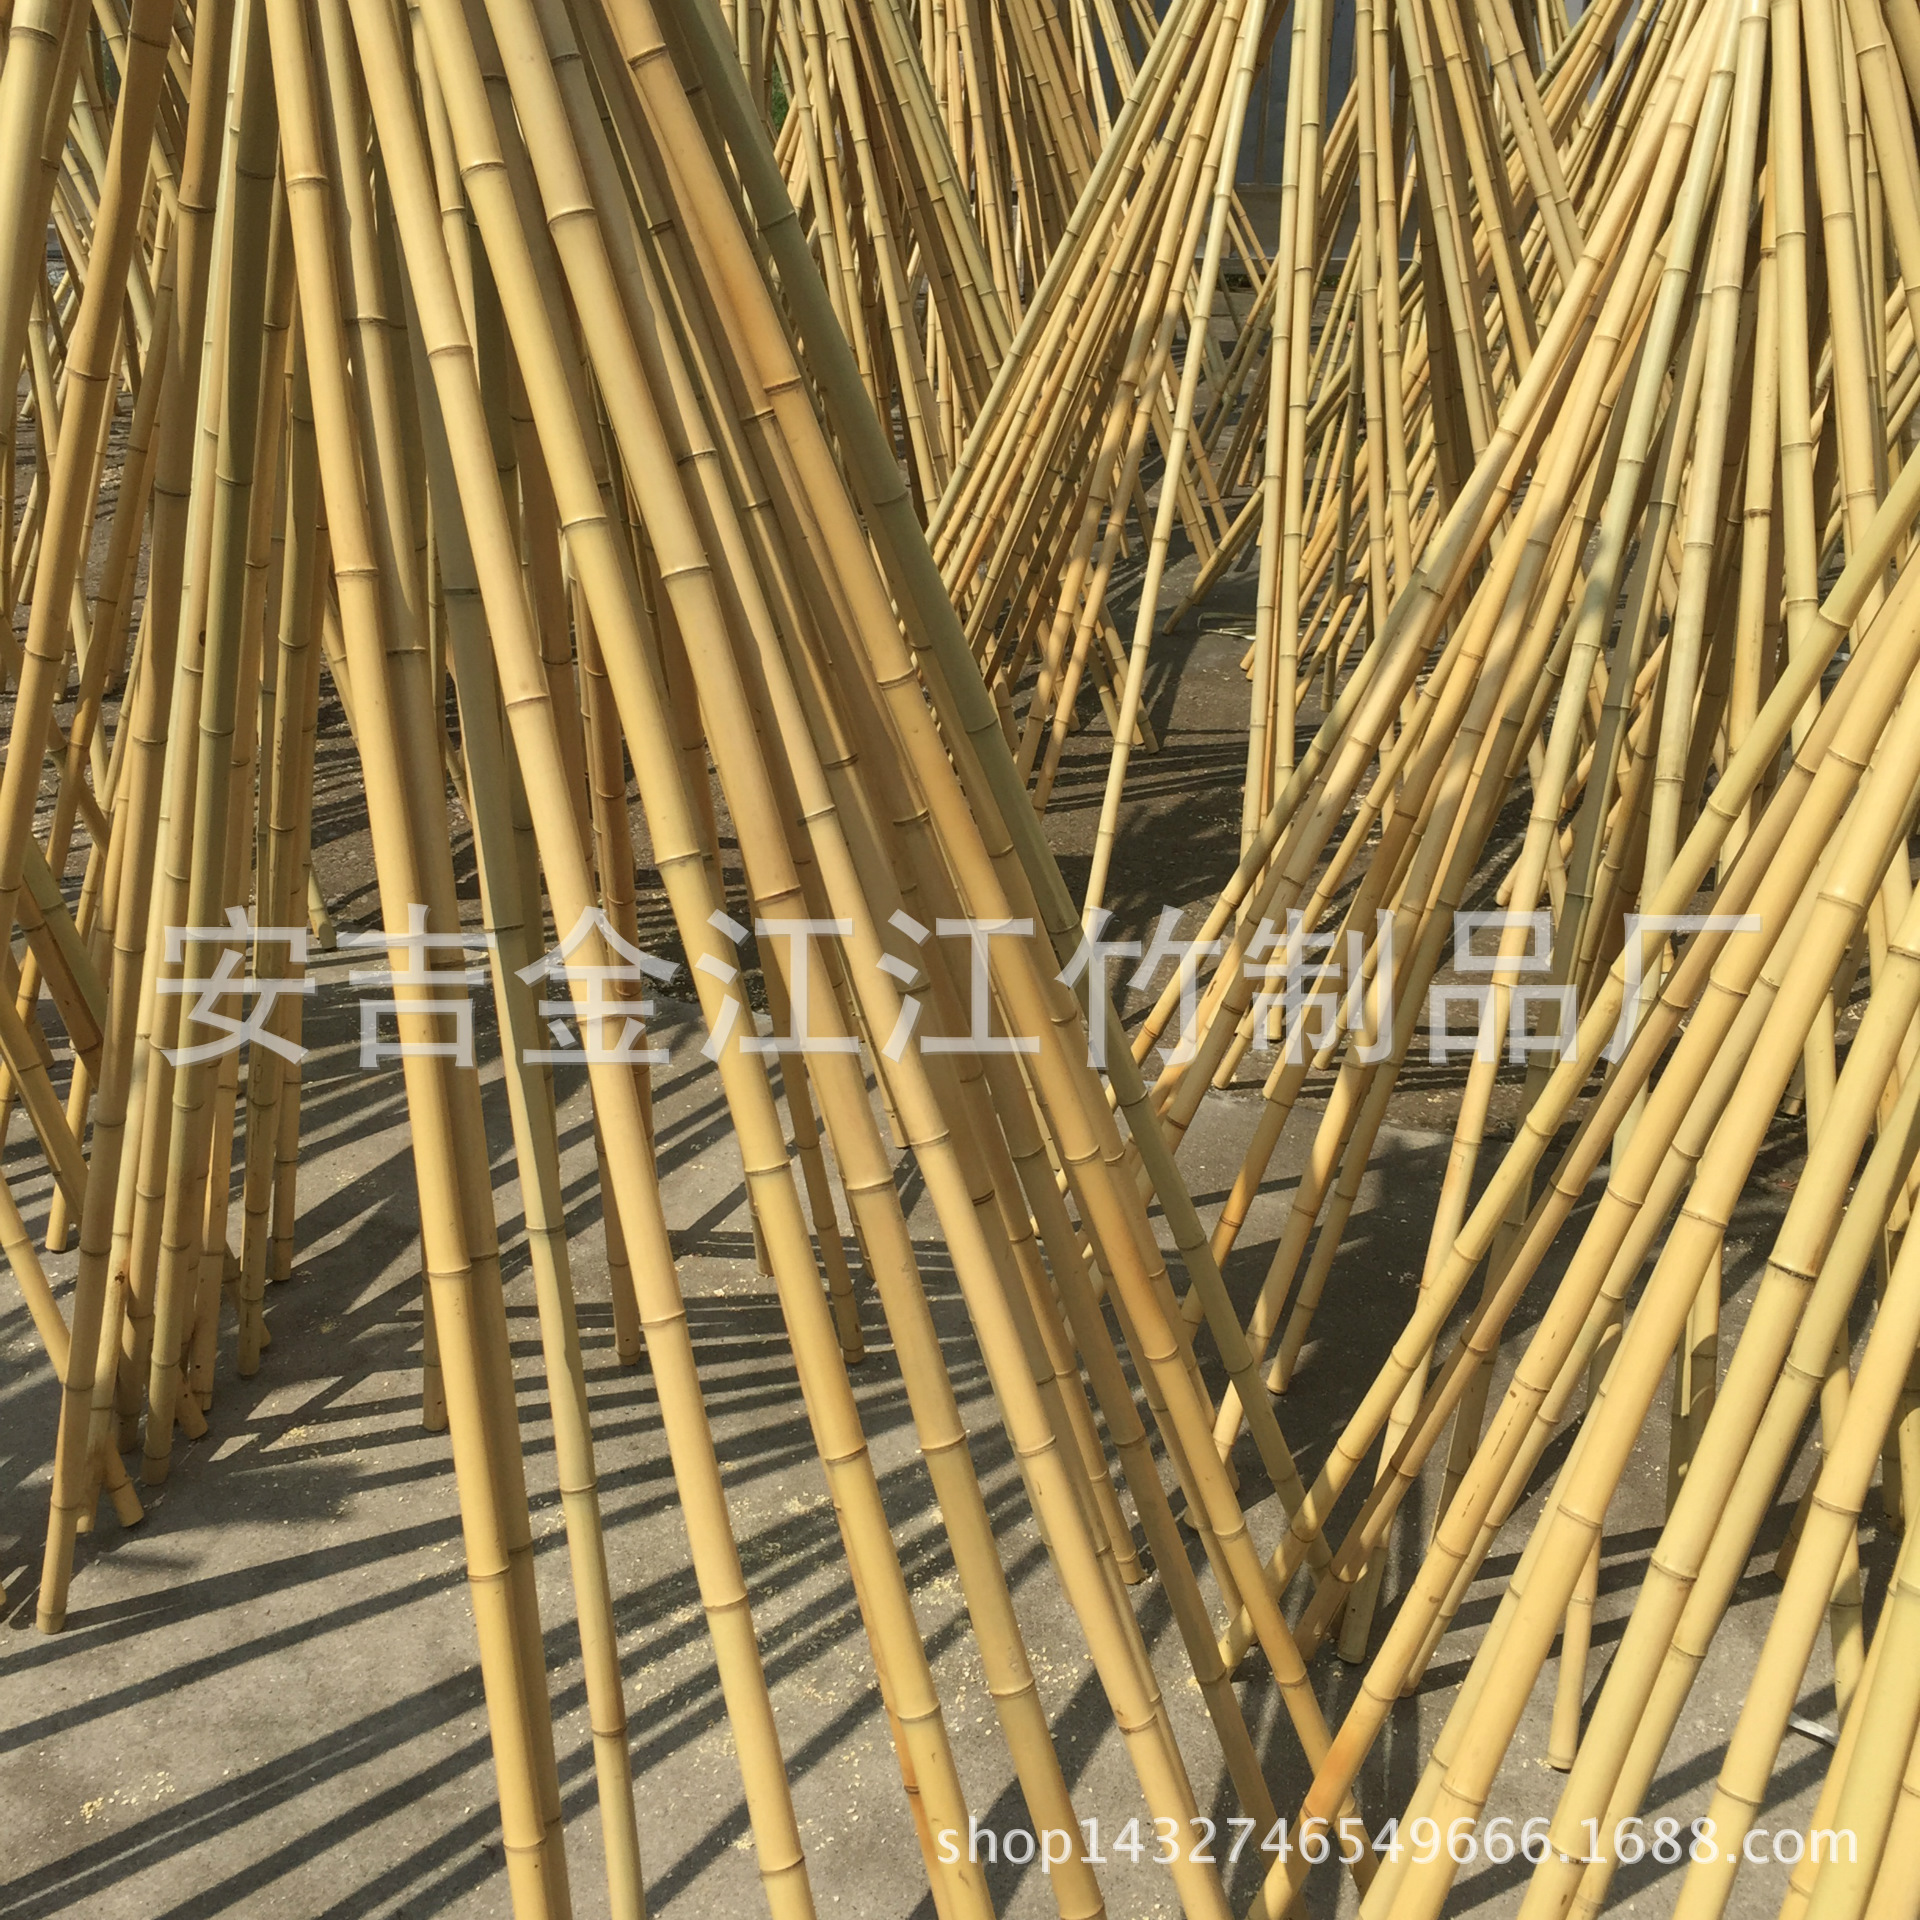 厂家承接设计竹装饰竹楼竹景观竹长廊竹材装修竹桥竹建筑竹房子-阿里巴巴